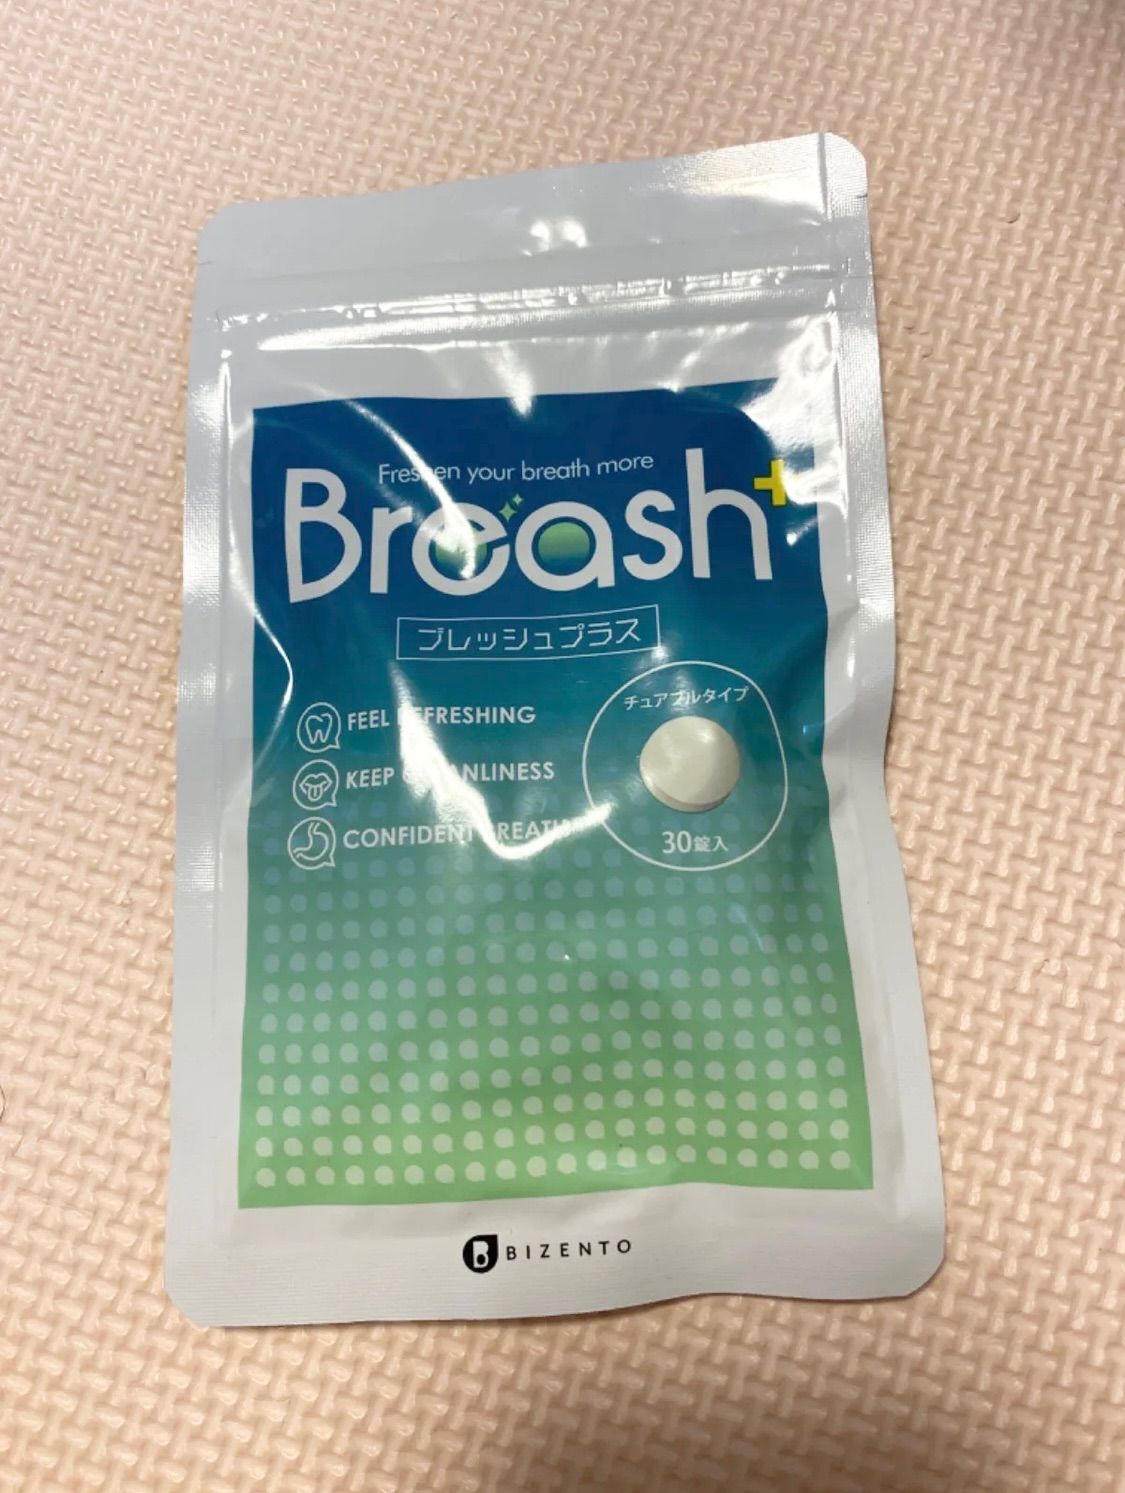 Breash+ ブレッシュプラス-me.com.kw